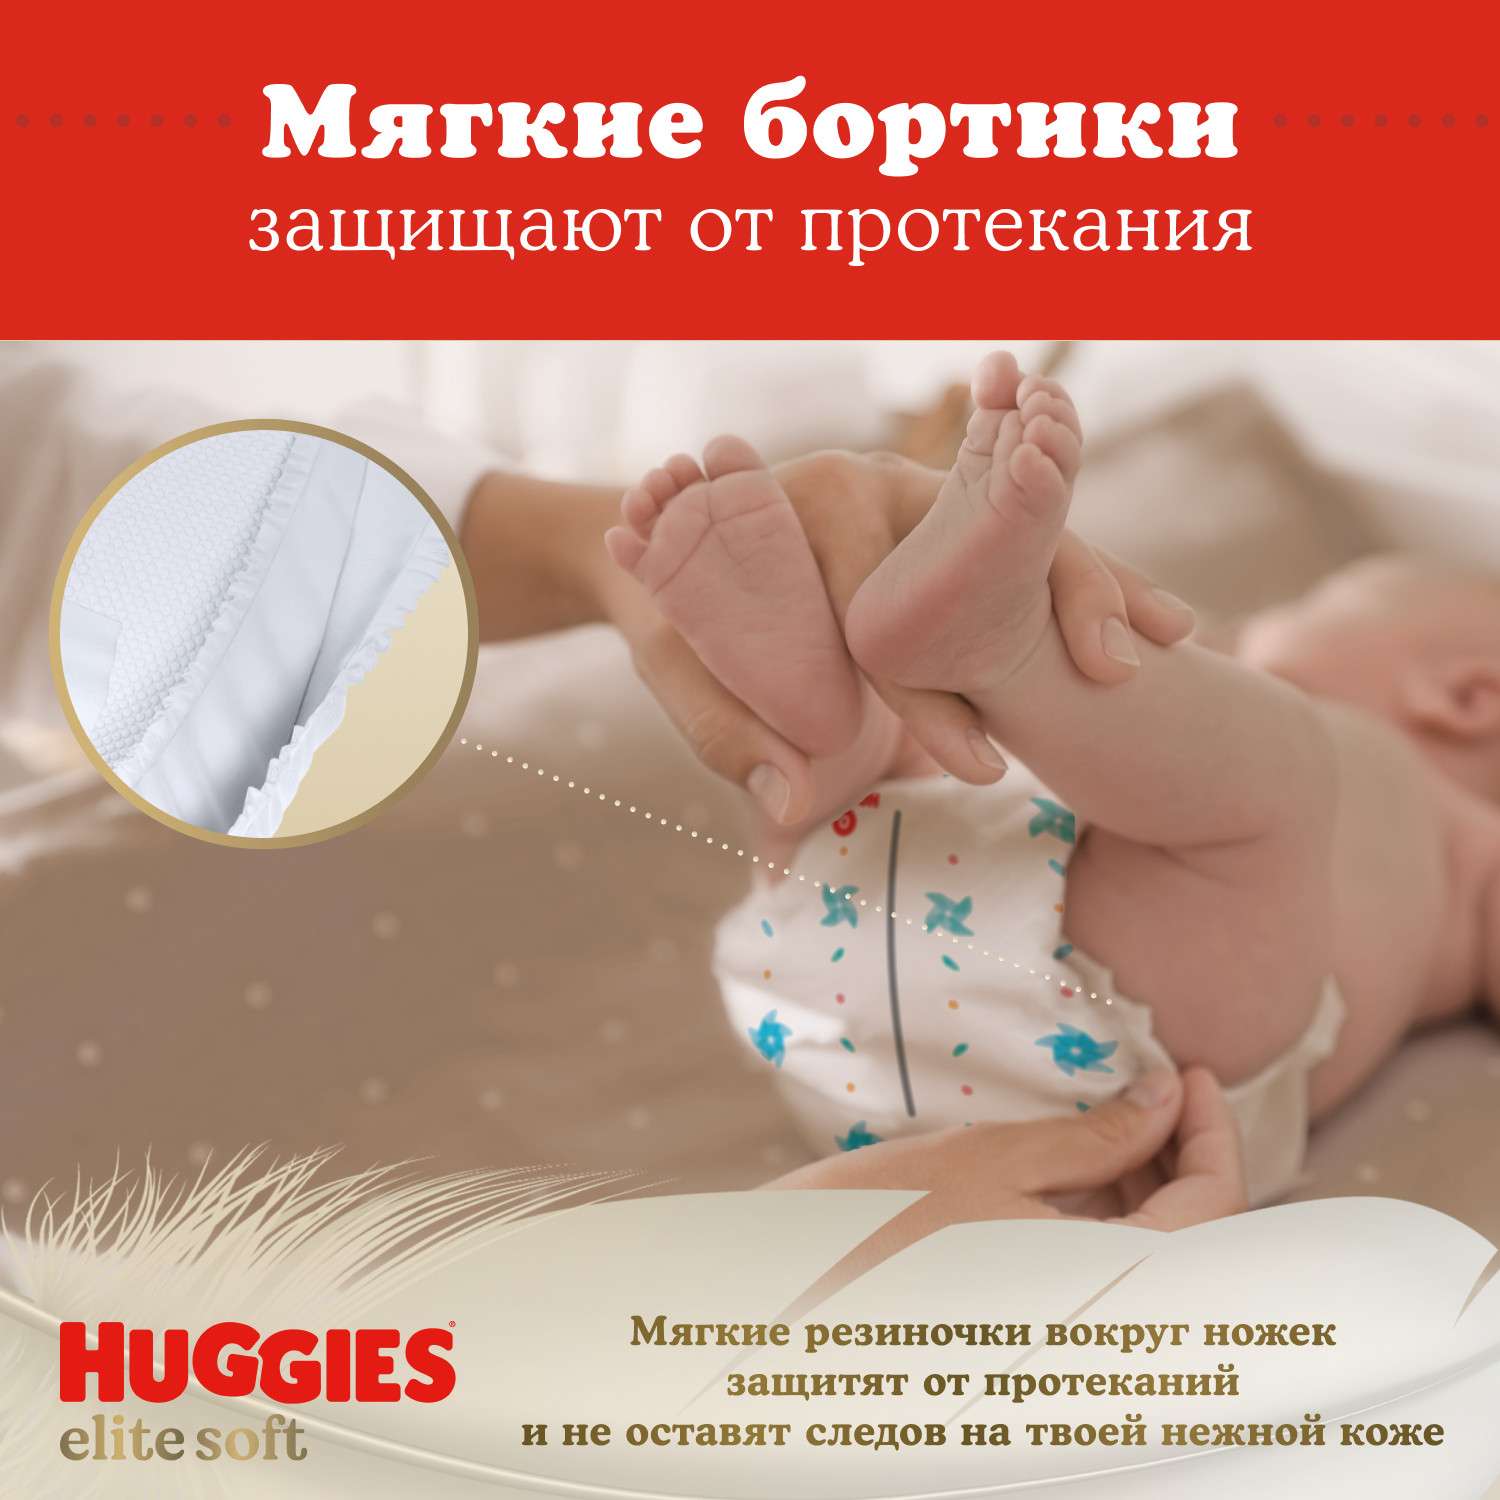 Подгузники Huggies Elite Soft для новорожденных 2 4-6кг 82шт - фото 10